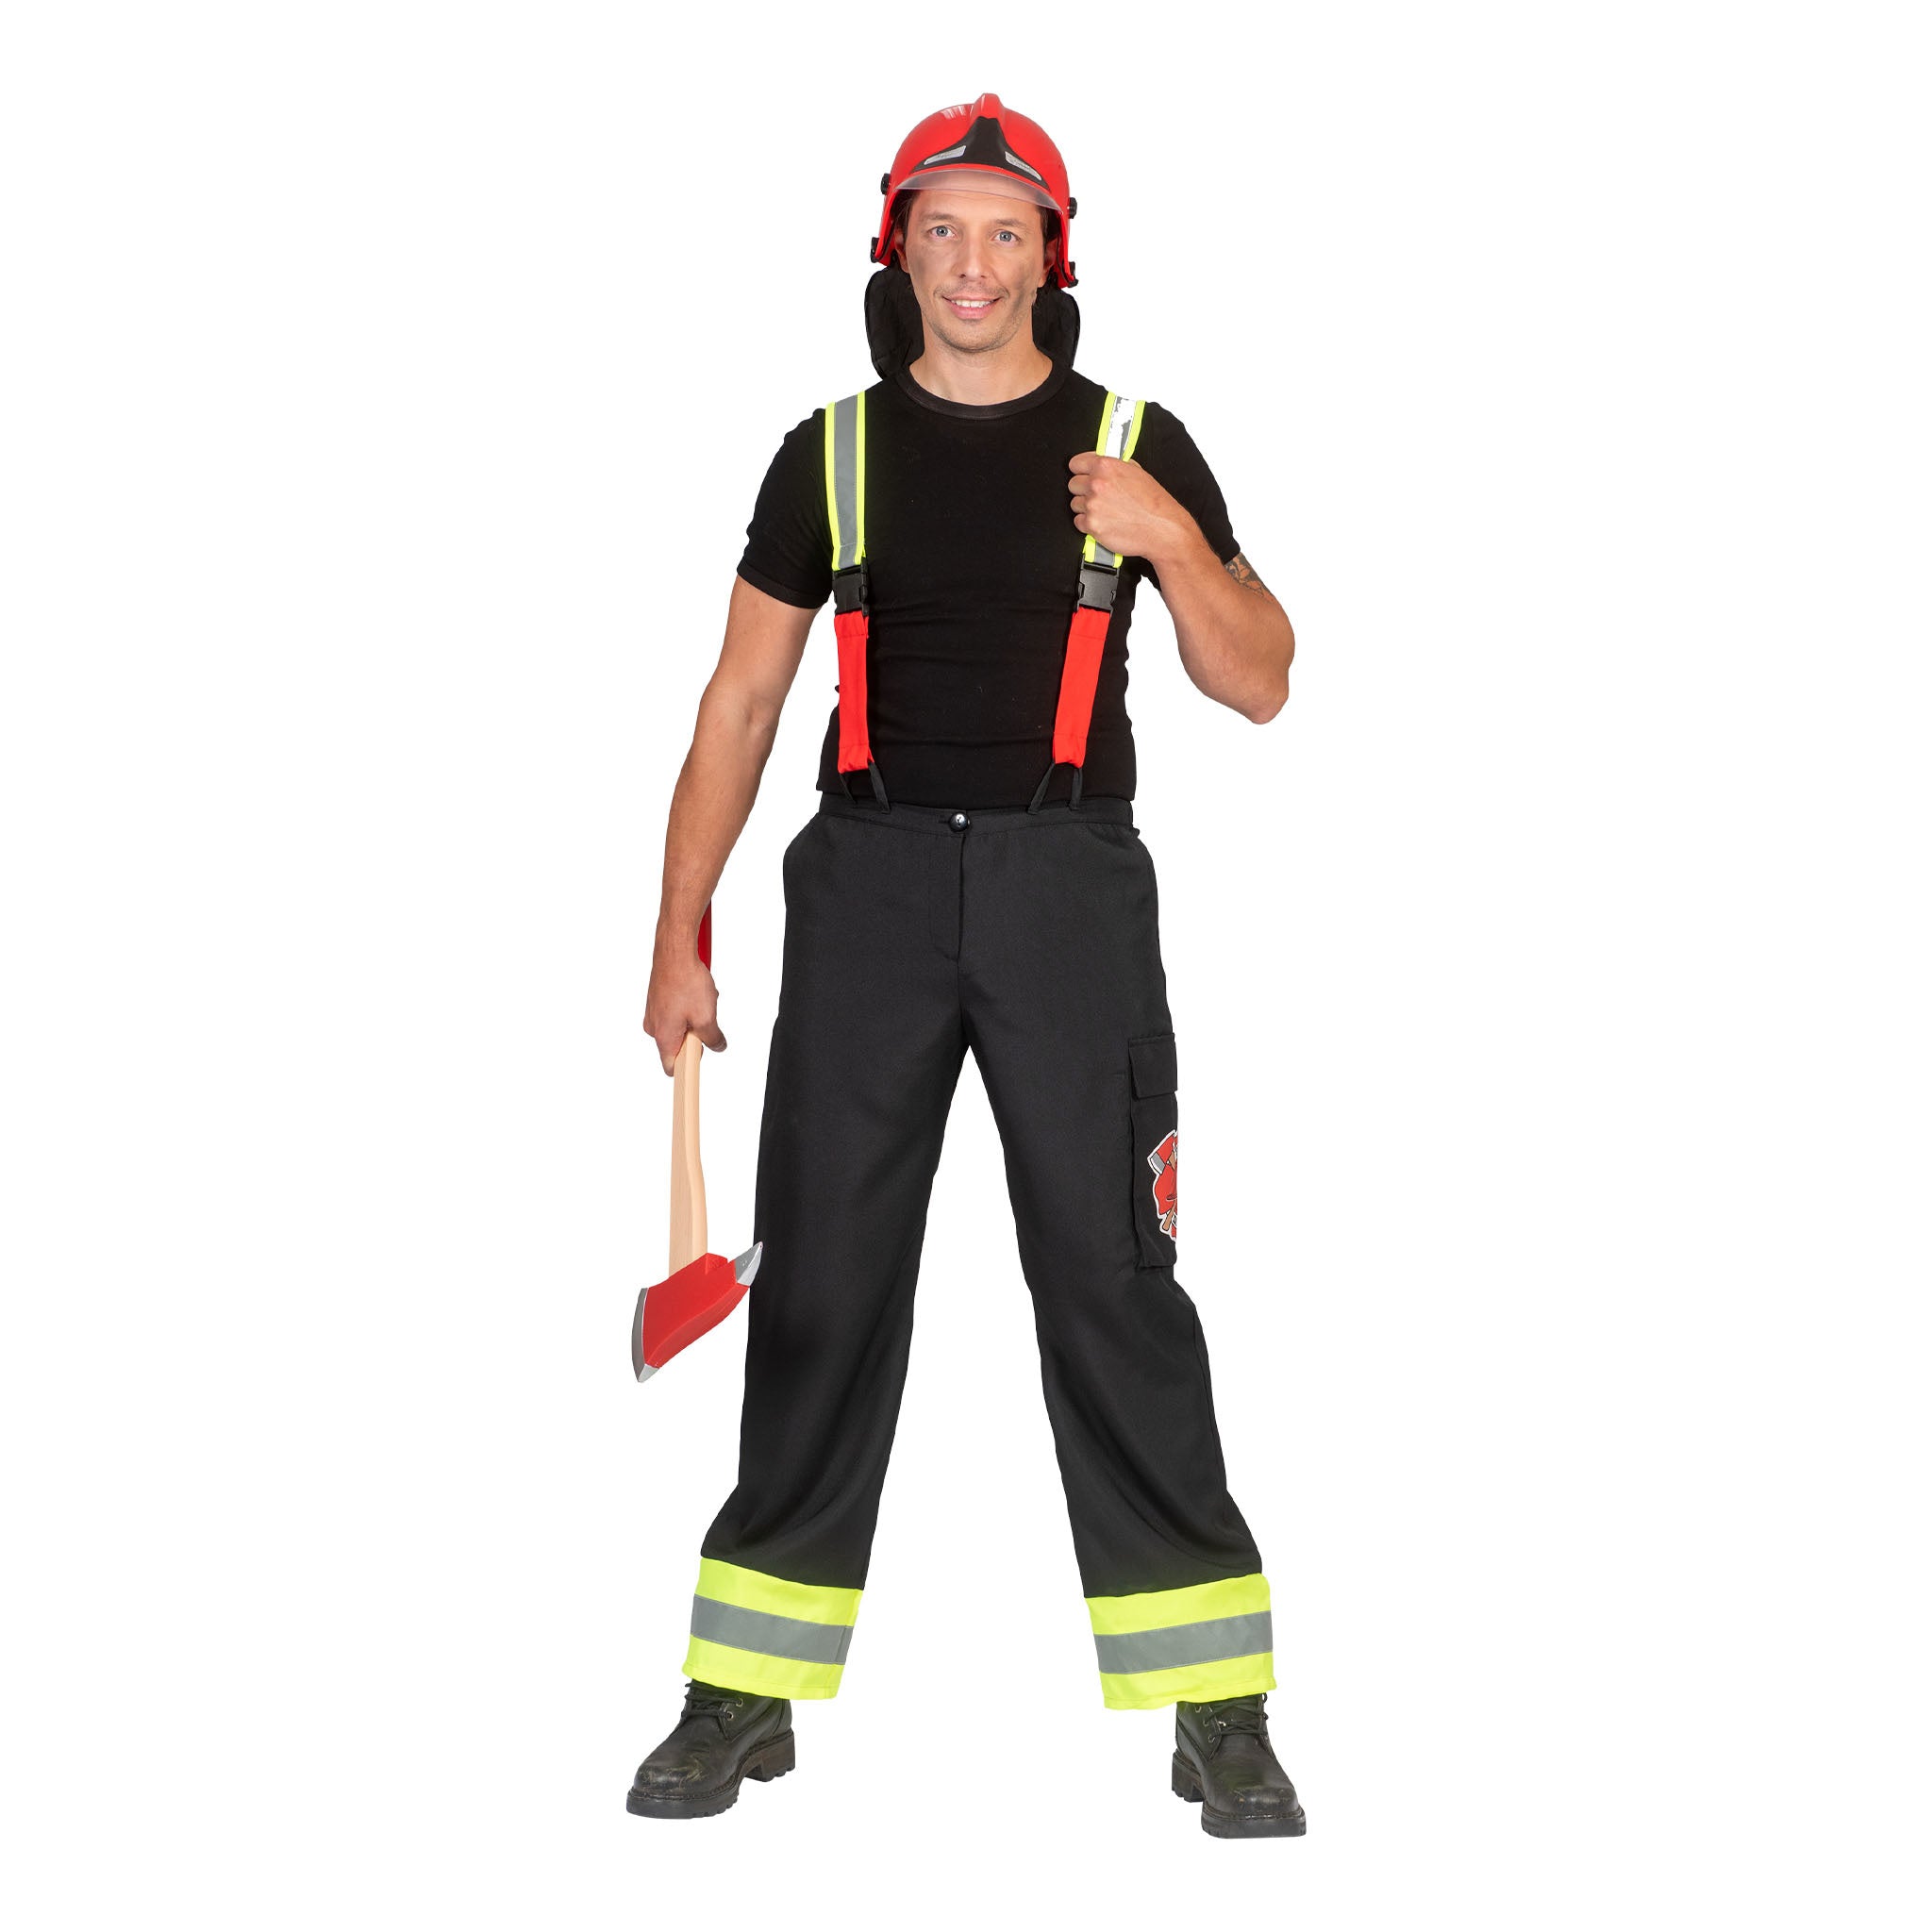 Ruig brandweer kostuum Jannes